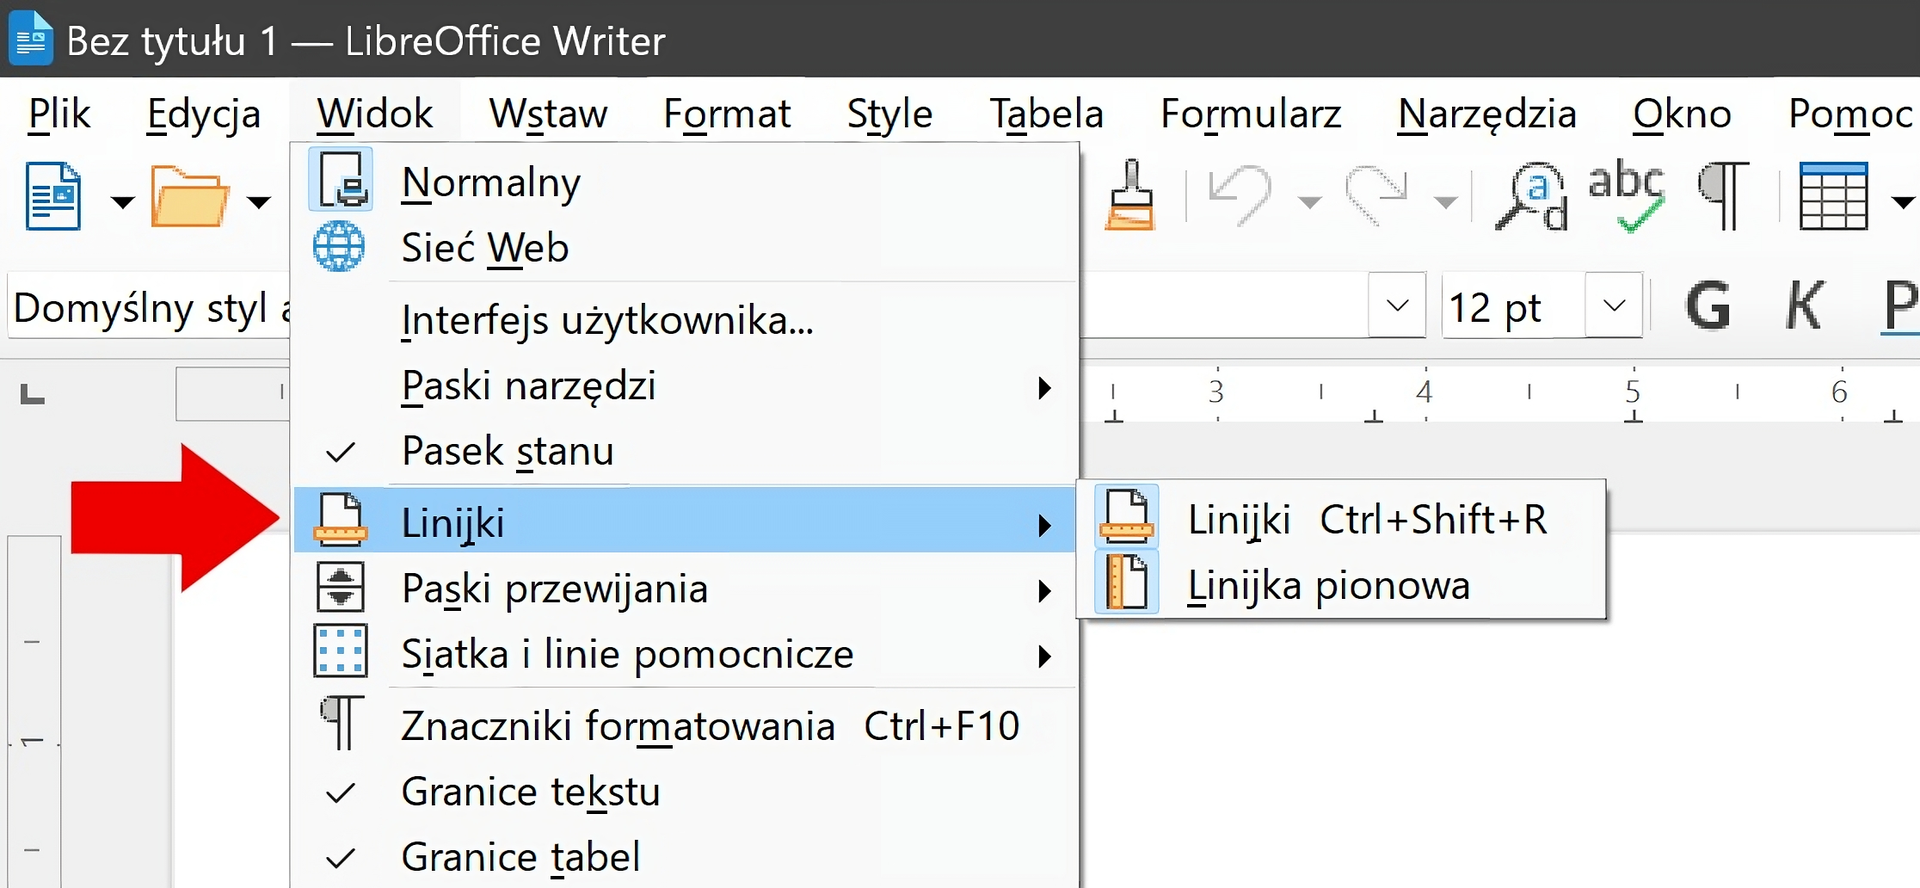 Ilustracja przedstawia lewy górny fragment okna programu LibreOffice Writer. Rozwinięta jest zakładka Widok. Na ilustracji znajduje się czerwona strzałka, wskazuje ona na pozycję Linijki z listy Widok. Pozycja Linijki jest dalej rozwinięta na ilustracji, dostępne są dwie opcje: Linijki, Linijka pionowa.